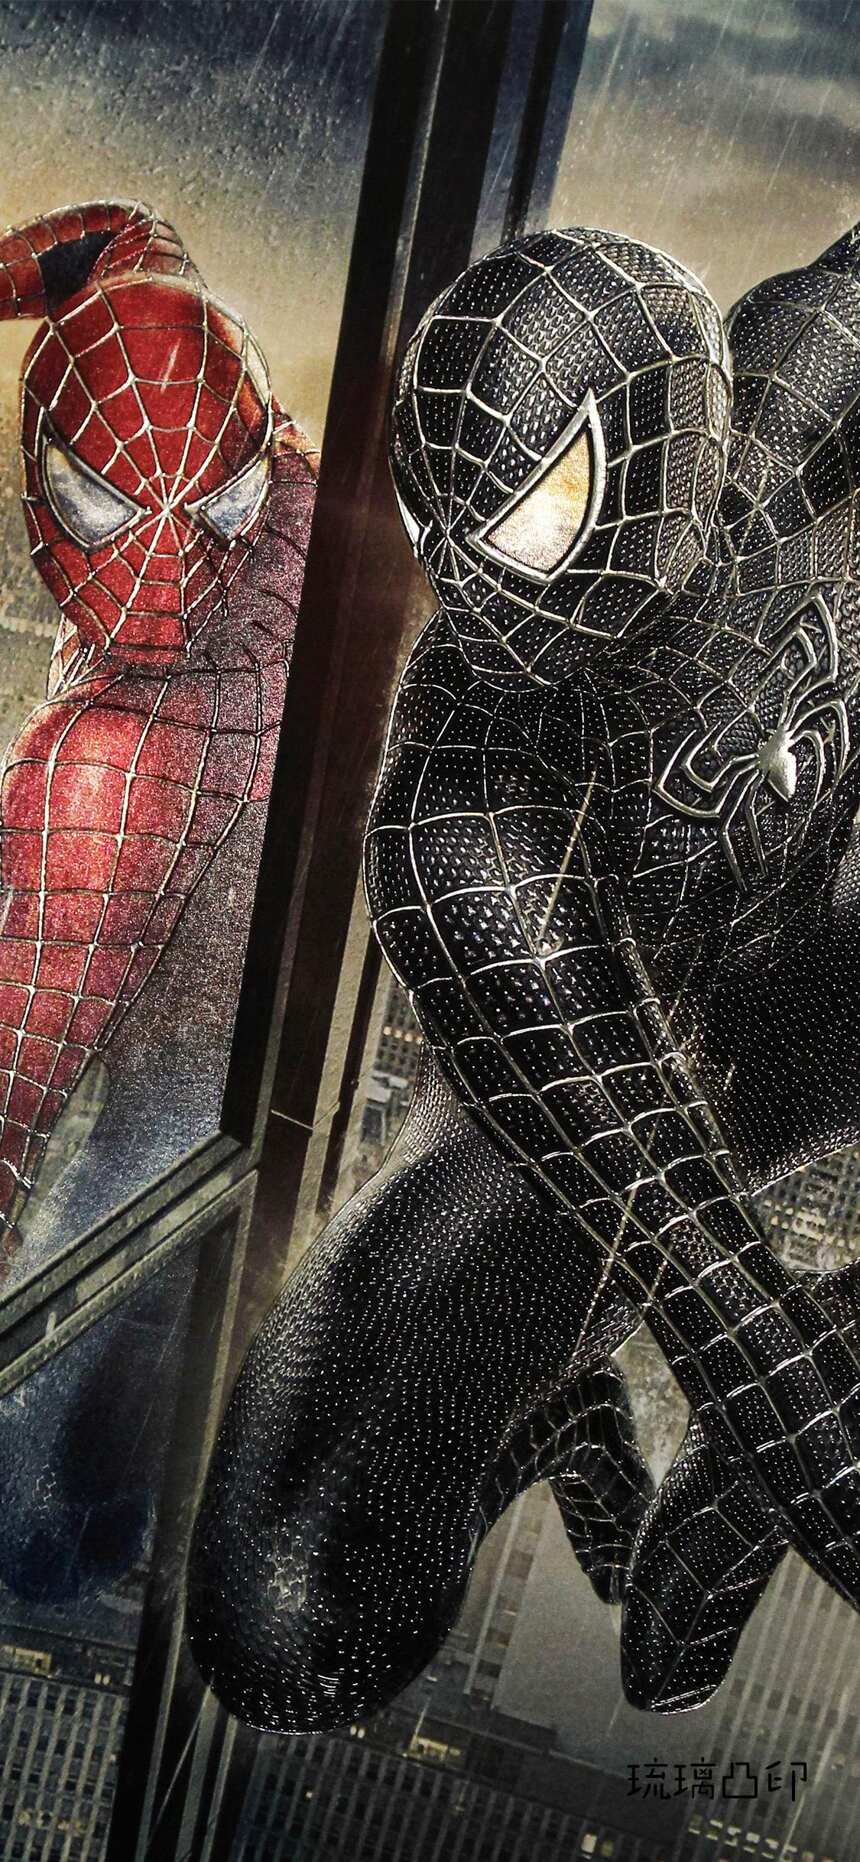 暗黑蜘蛛侠Spider-Man，高清苹果手机 iphoneX壁纸